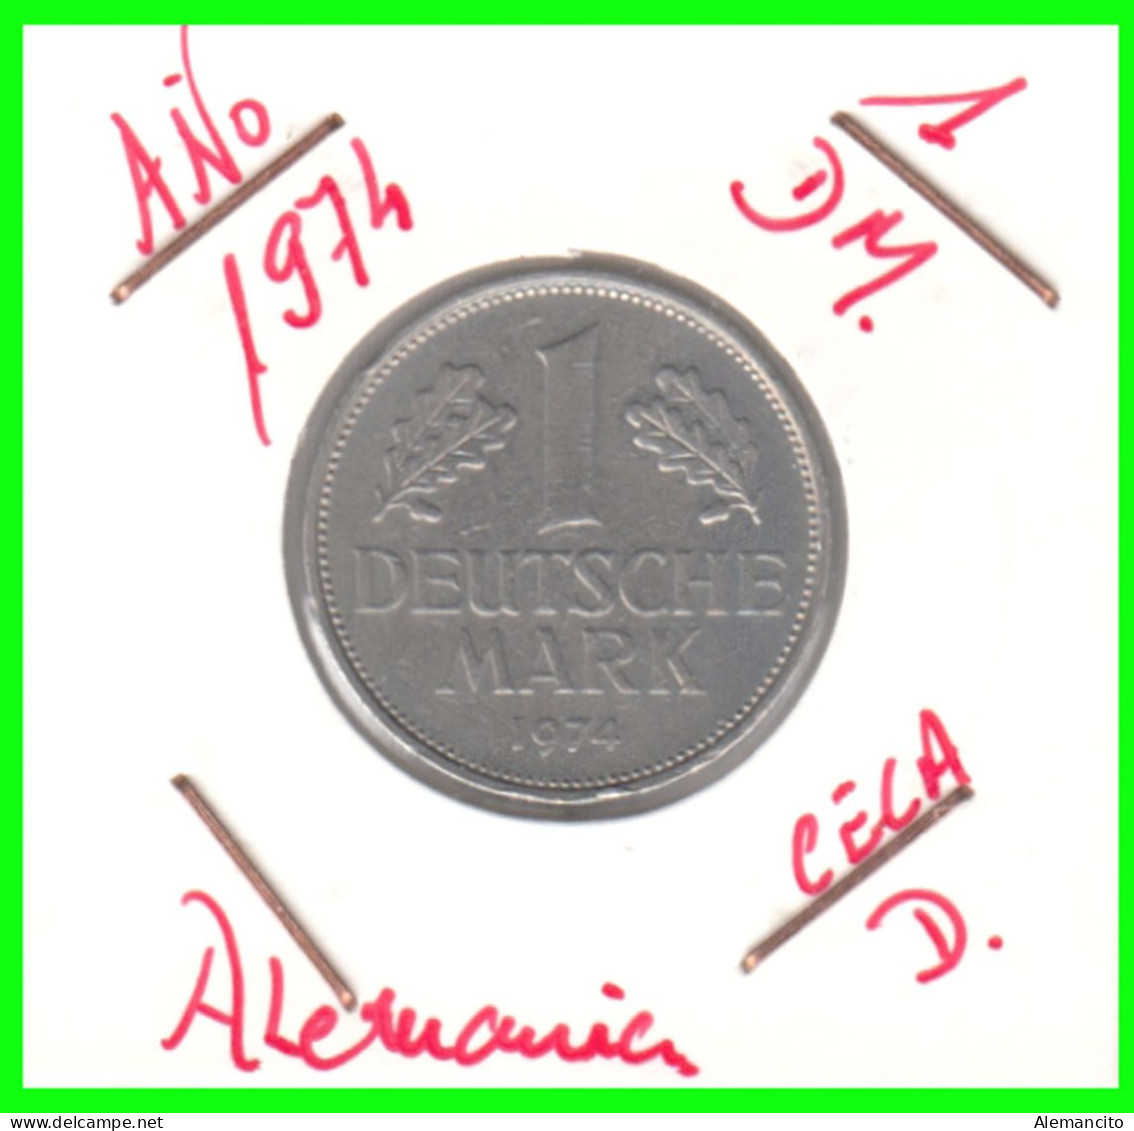 ALEMANIA FEDERAL - DEUTSCHLAND - GERMANY –  MONEDA DE LA REPUBLICA FEDERAL DE ALEMANIA DE 1.00 DM-DEL AÑO 1974 - CECA-D - 1 Mark